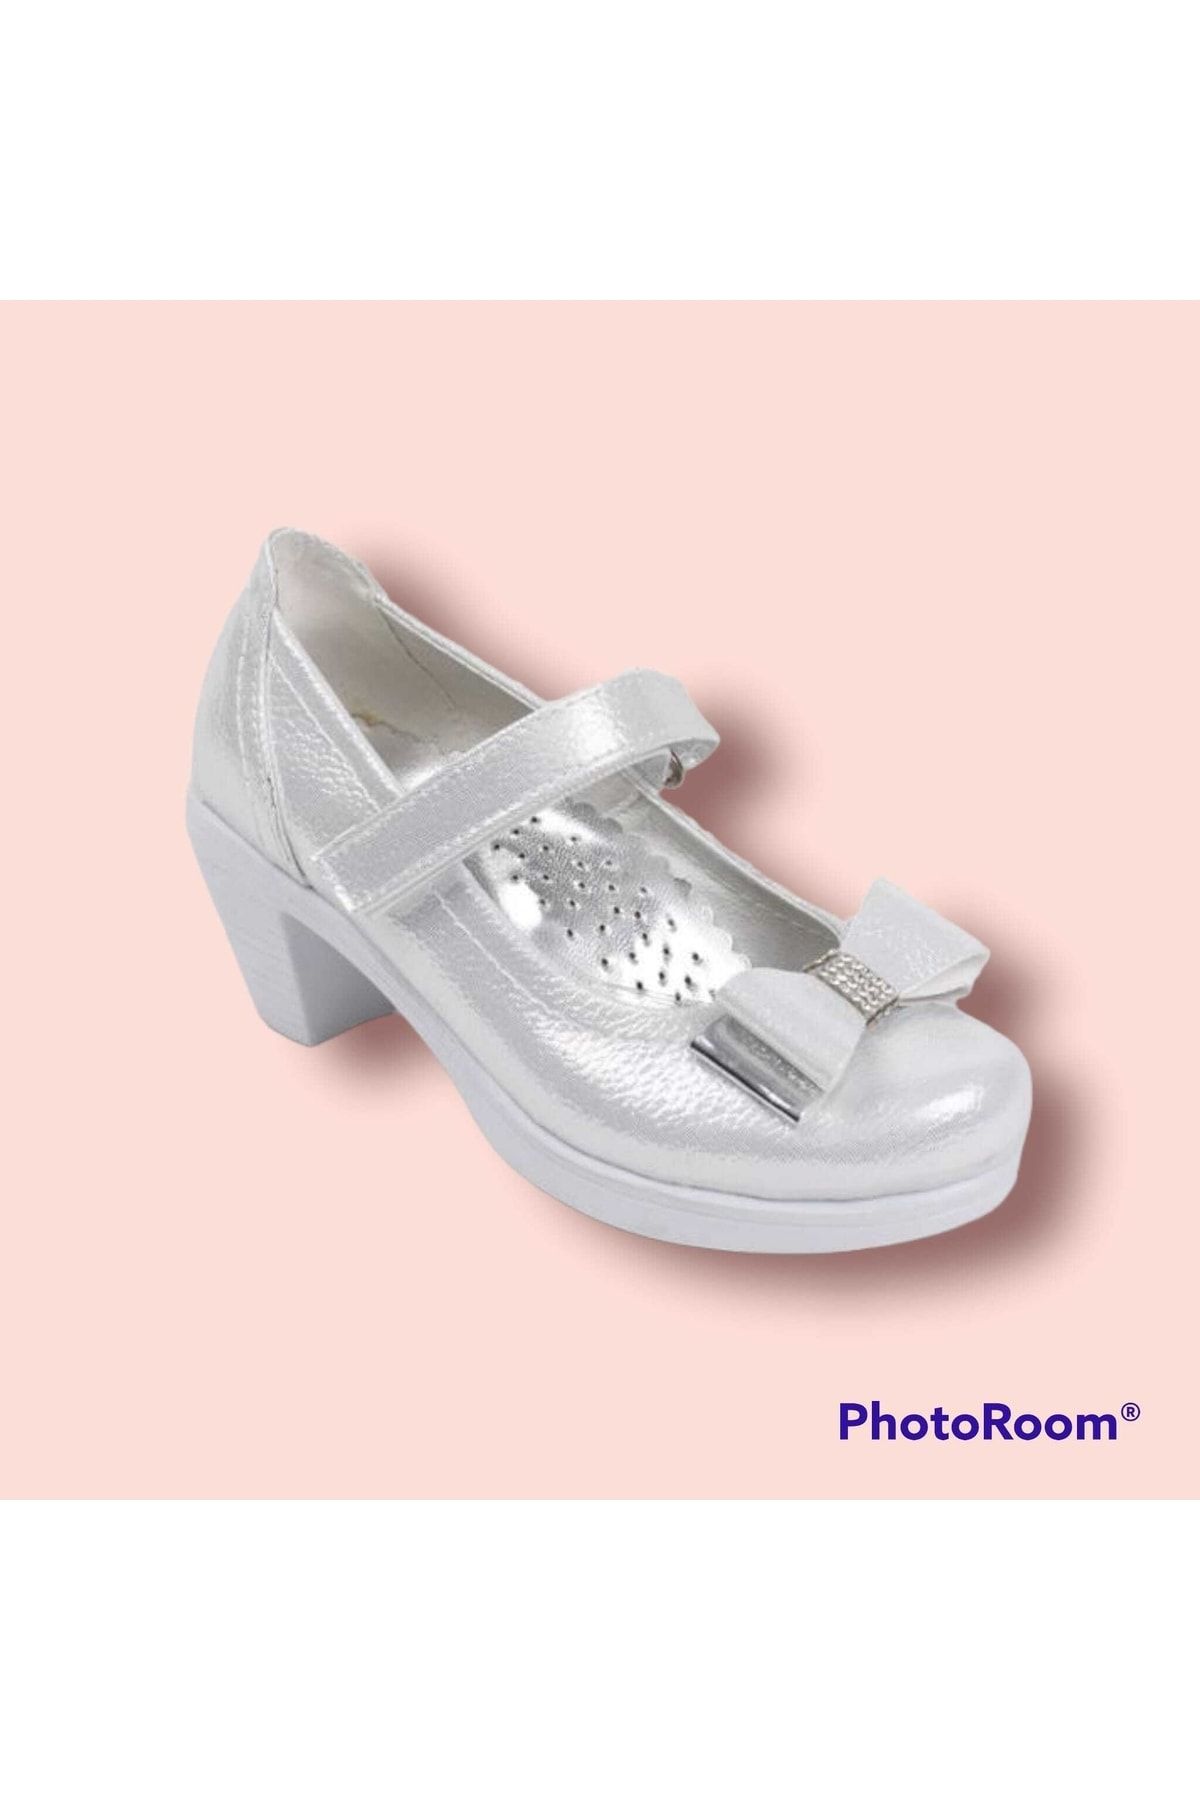 Sare Çocuk Giyim Kız Çocuk Fiyonk Detaylı Beyaz Topuklu Abiye Ayakkabı